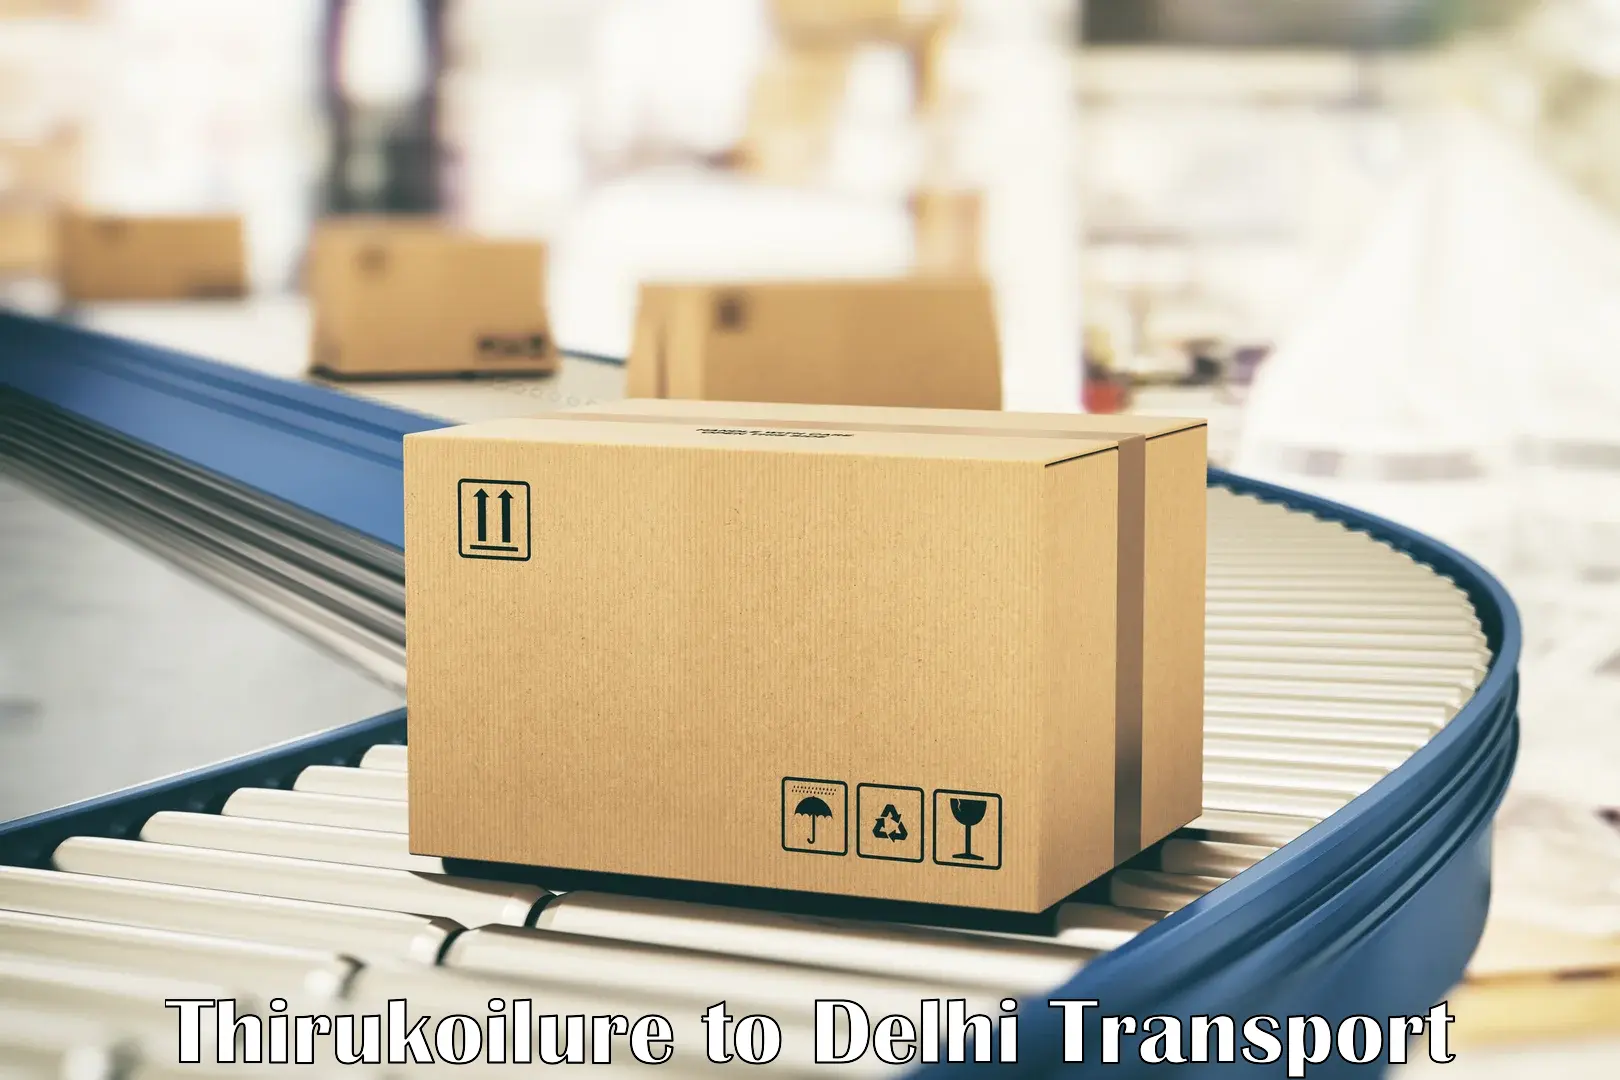 Cargo train transport services Thirukoilure to IIT Delhi